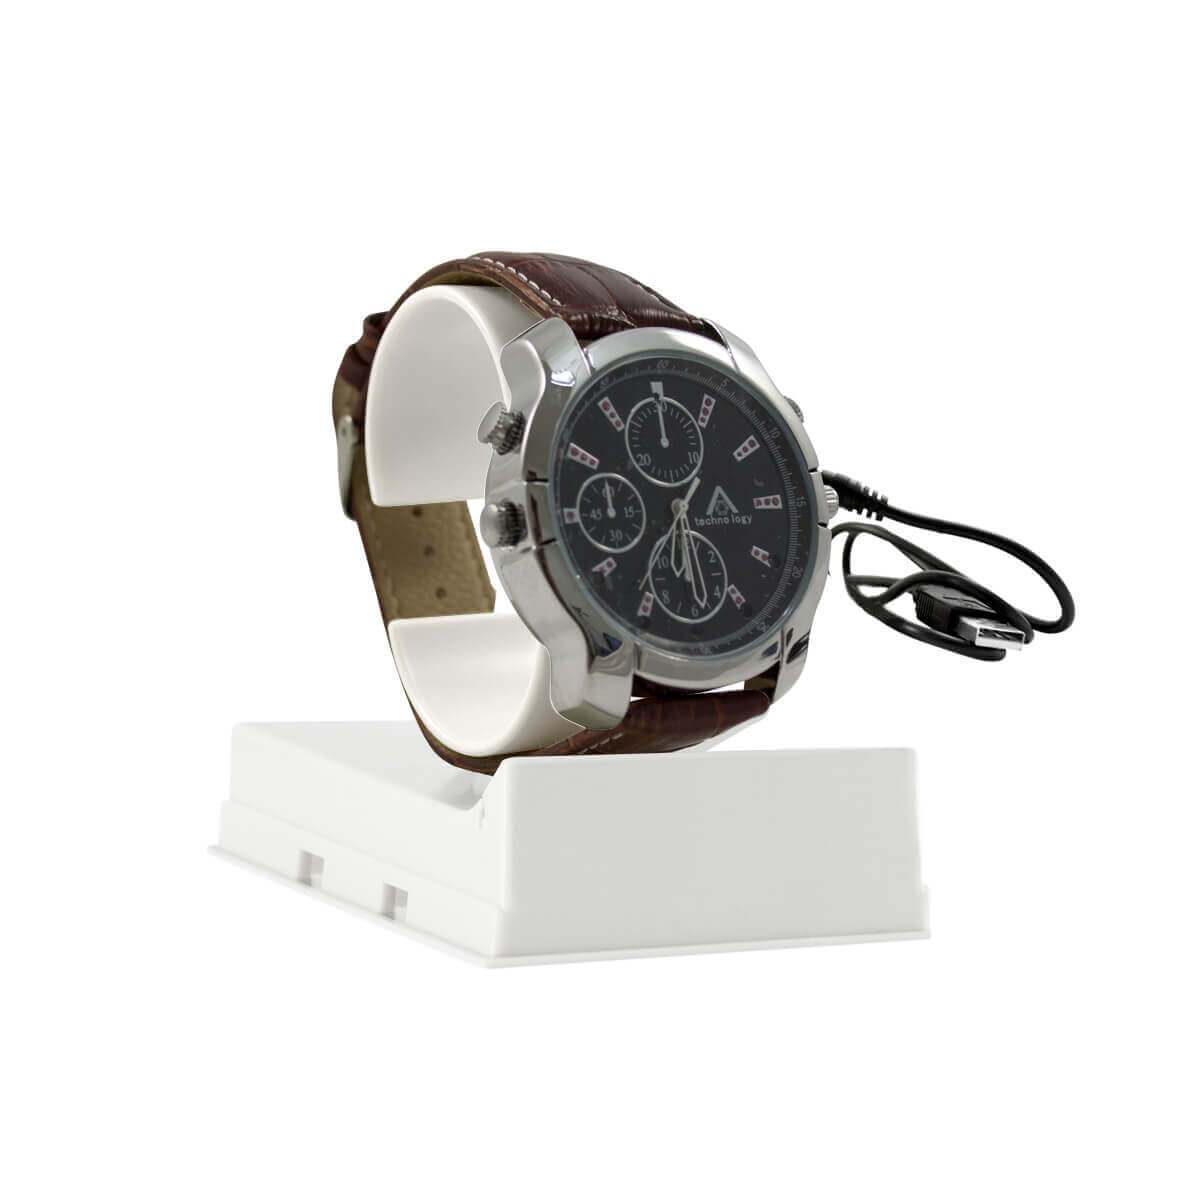 Reloj de pulsera con camara oculta, 1080P, microfono, capacidad 4Gb